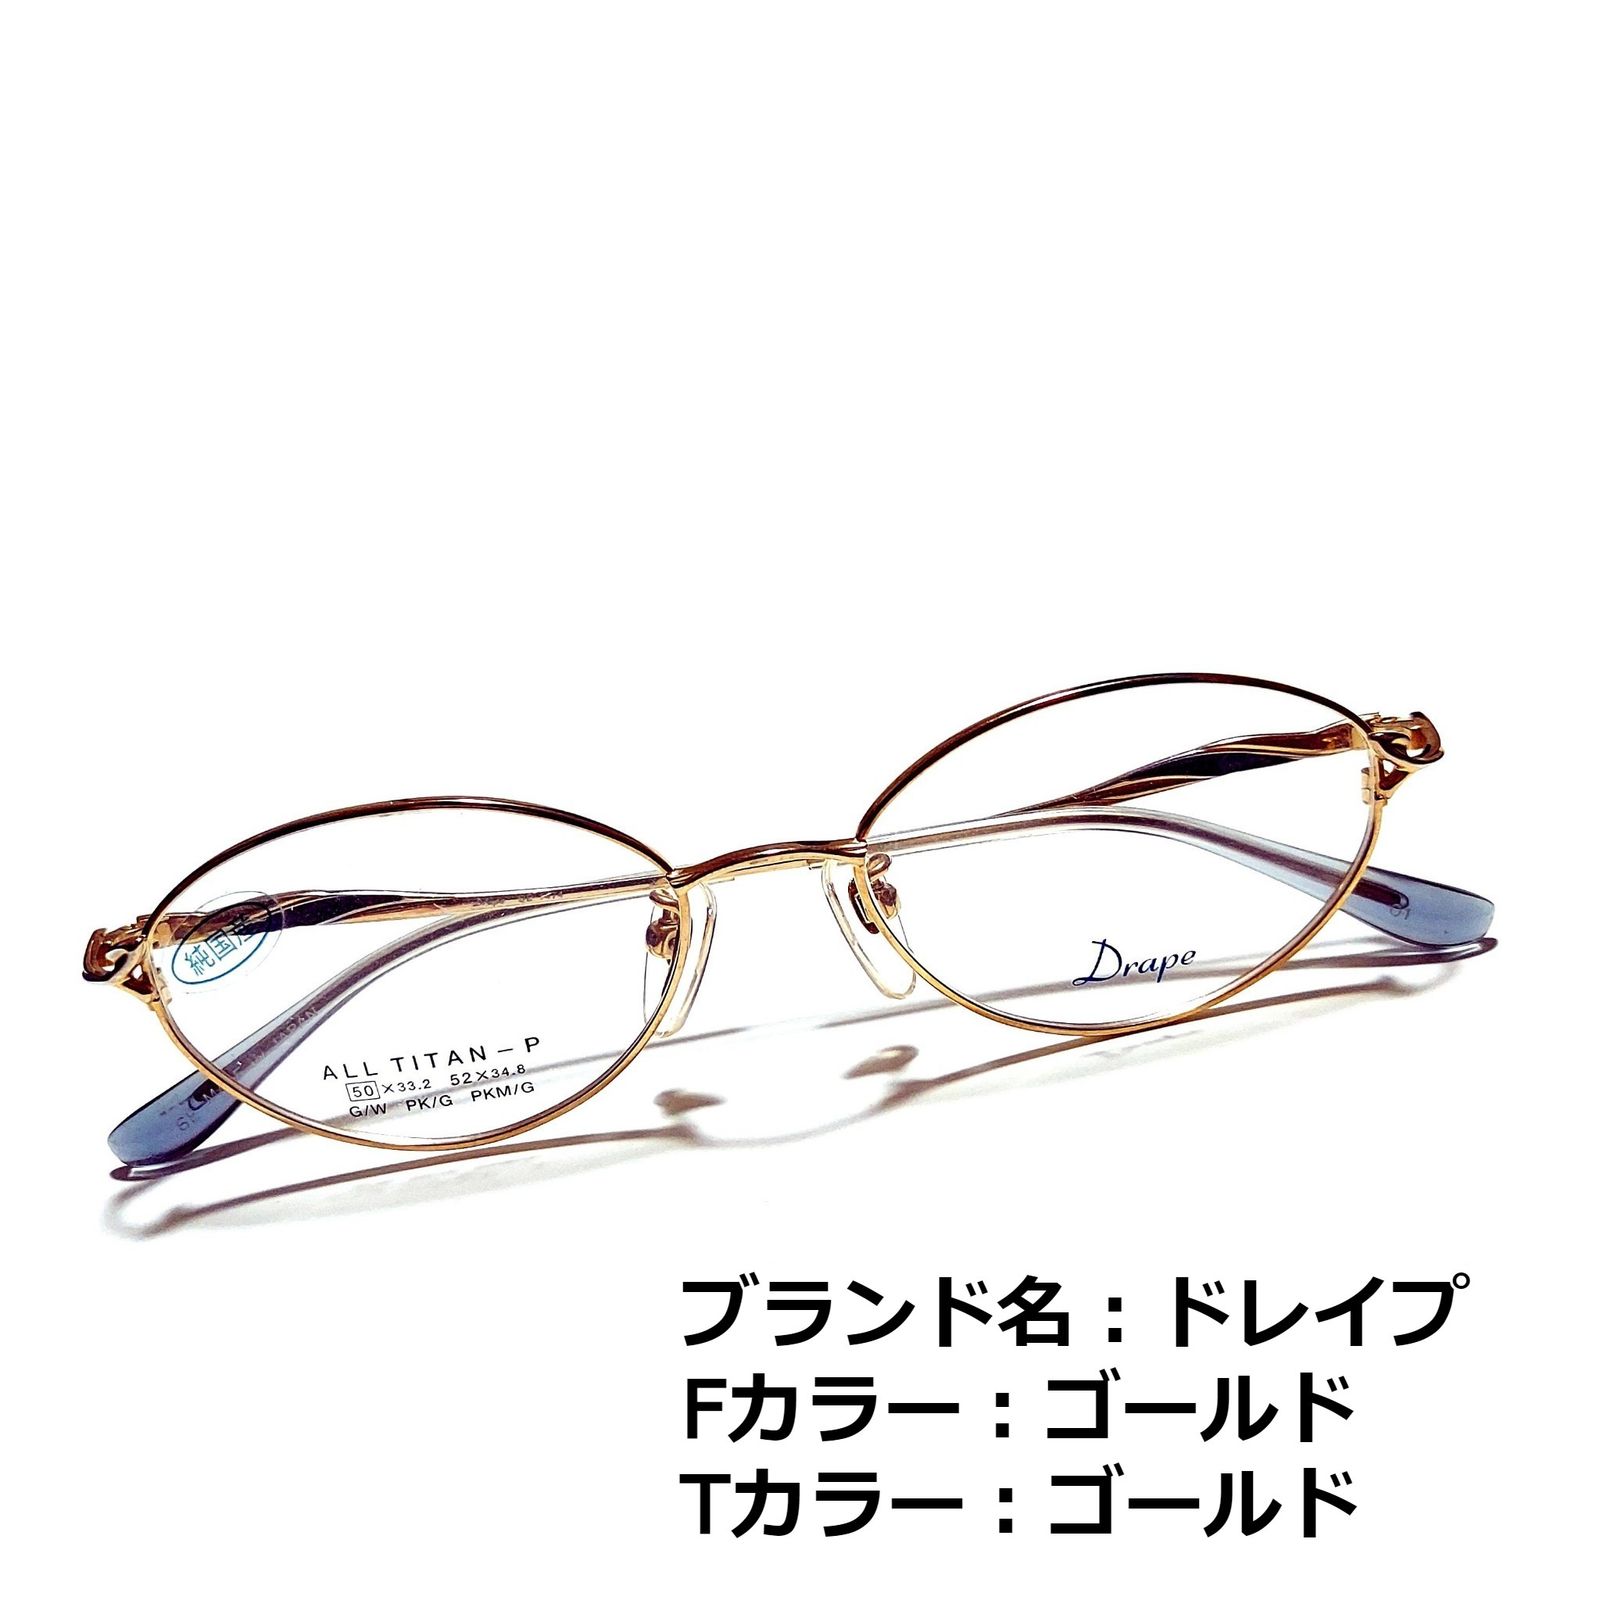 一番の No.1544メガネ MORPHEE【度数入り込み価格】 No.1548メガネ ...